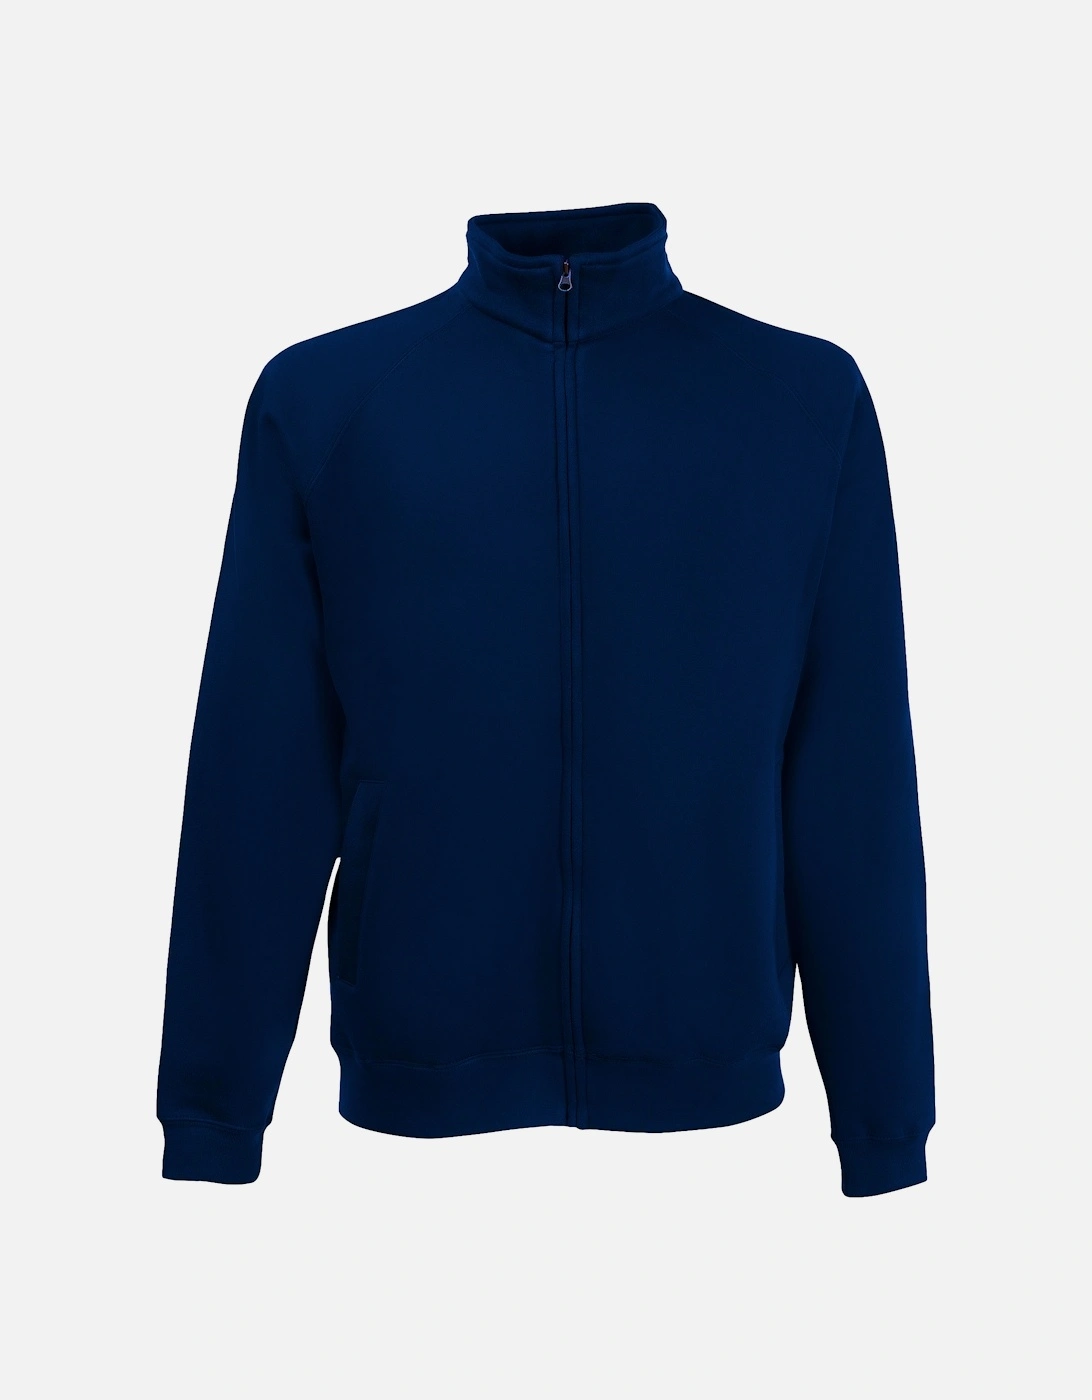 Mens Premium 70/30 Full Zip Sweatshirt Jacket, 4 of 3